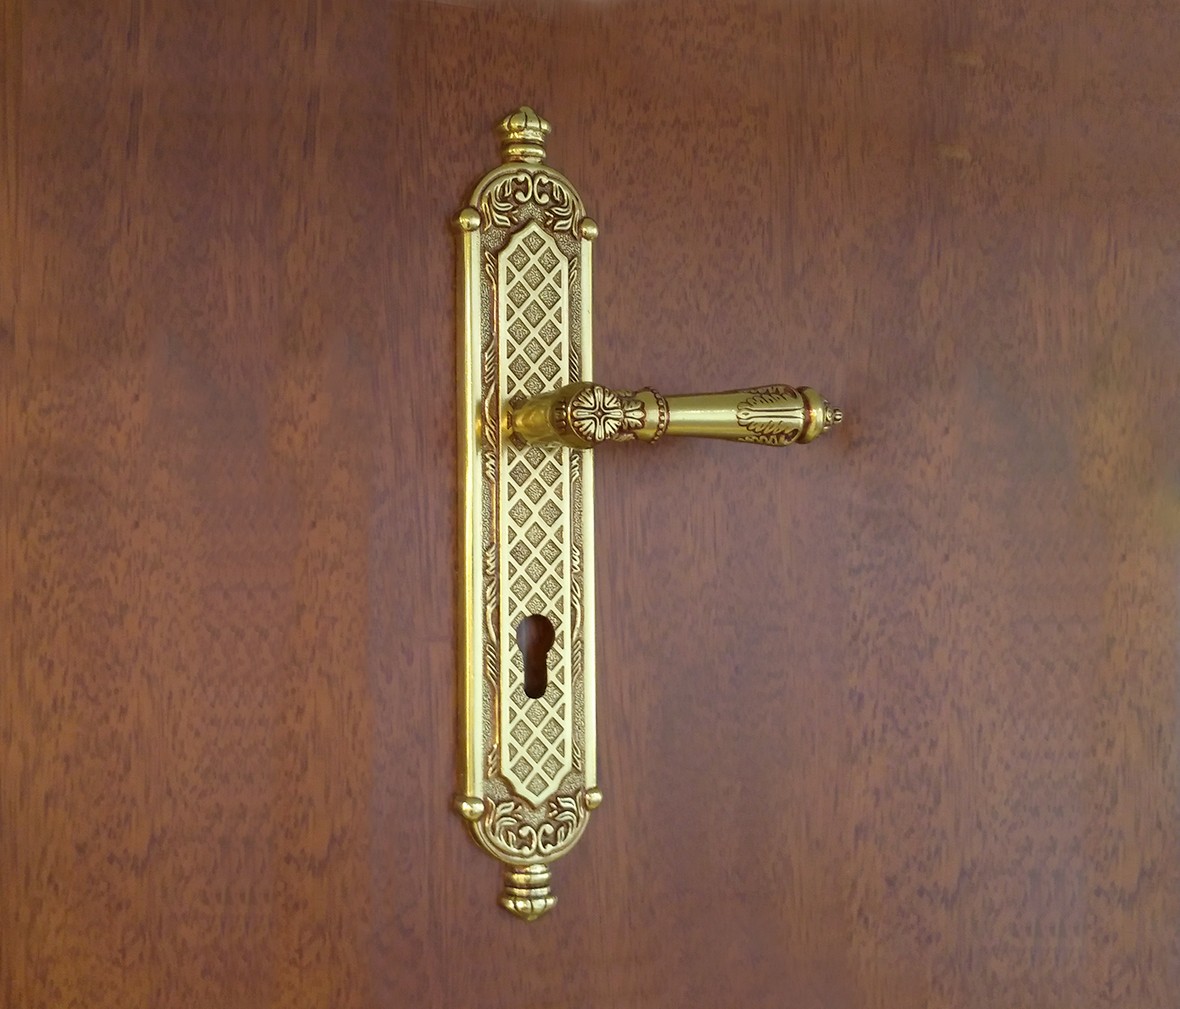 晾霸五金 米开朗821-23欧洲金型号门锁 铜材质 优质门锁 情景细节